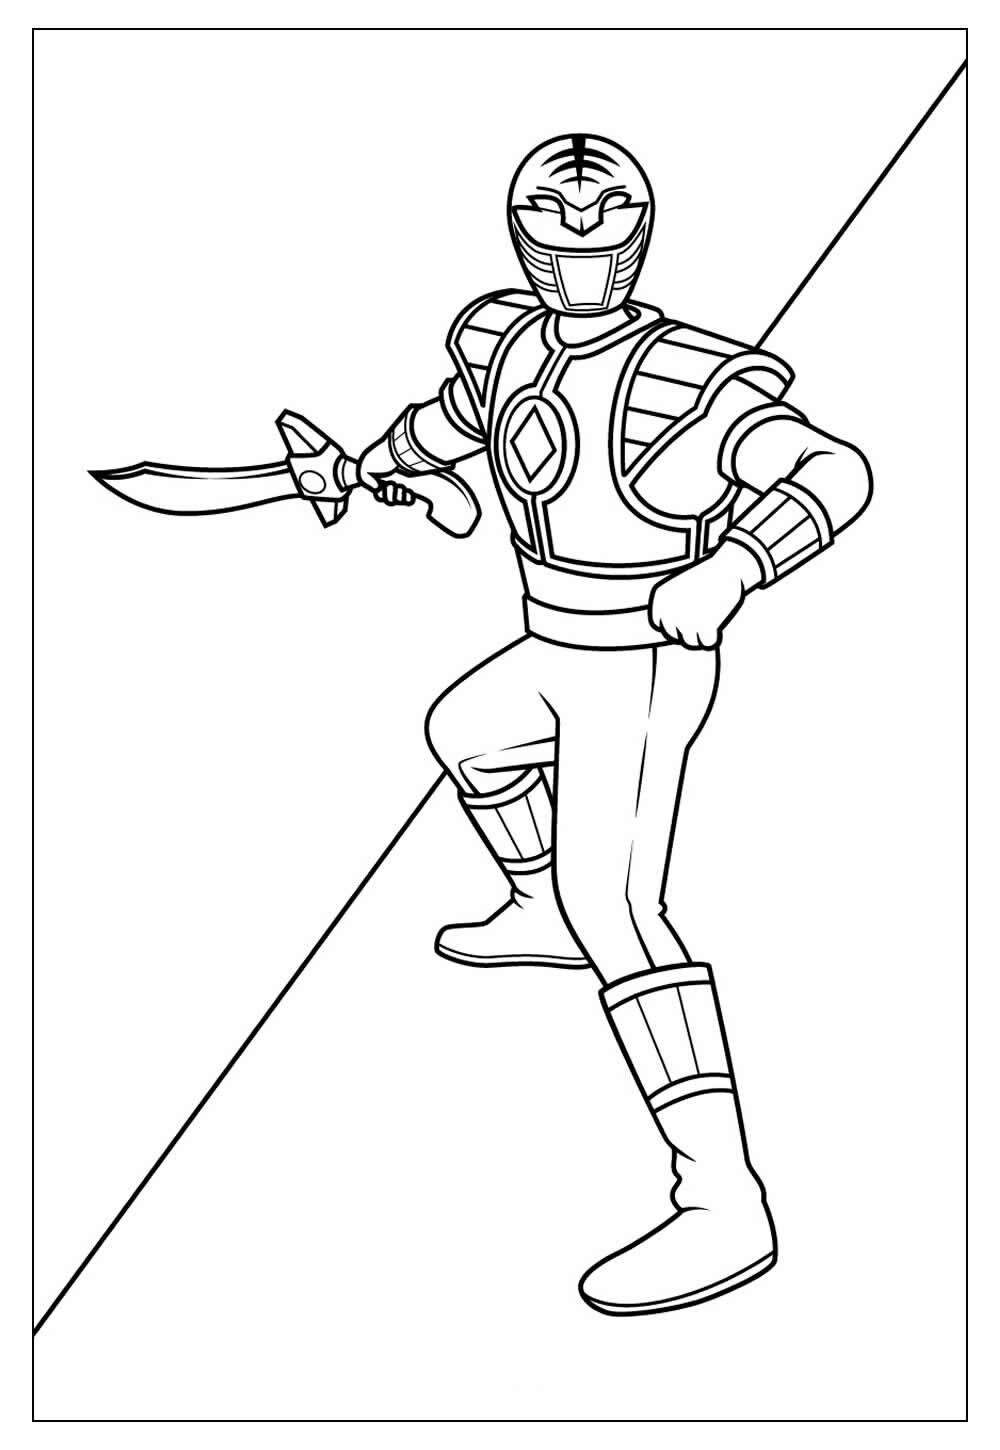 Como desenhar e pintar Ranger Vermelho Power Rangers 